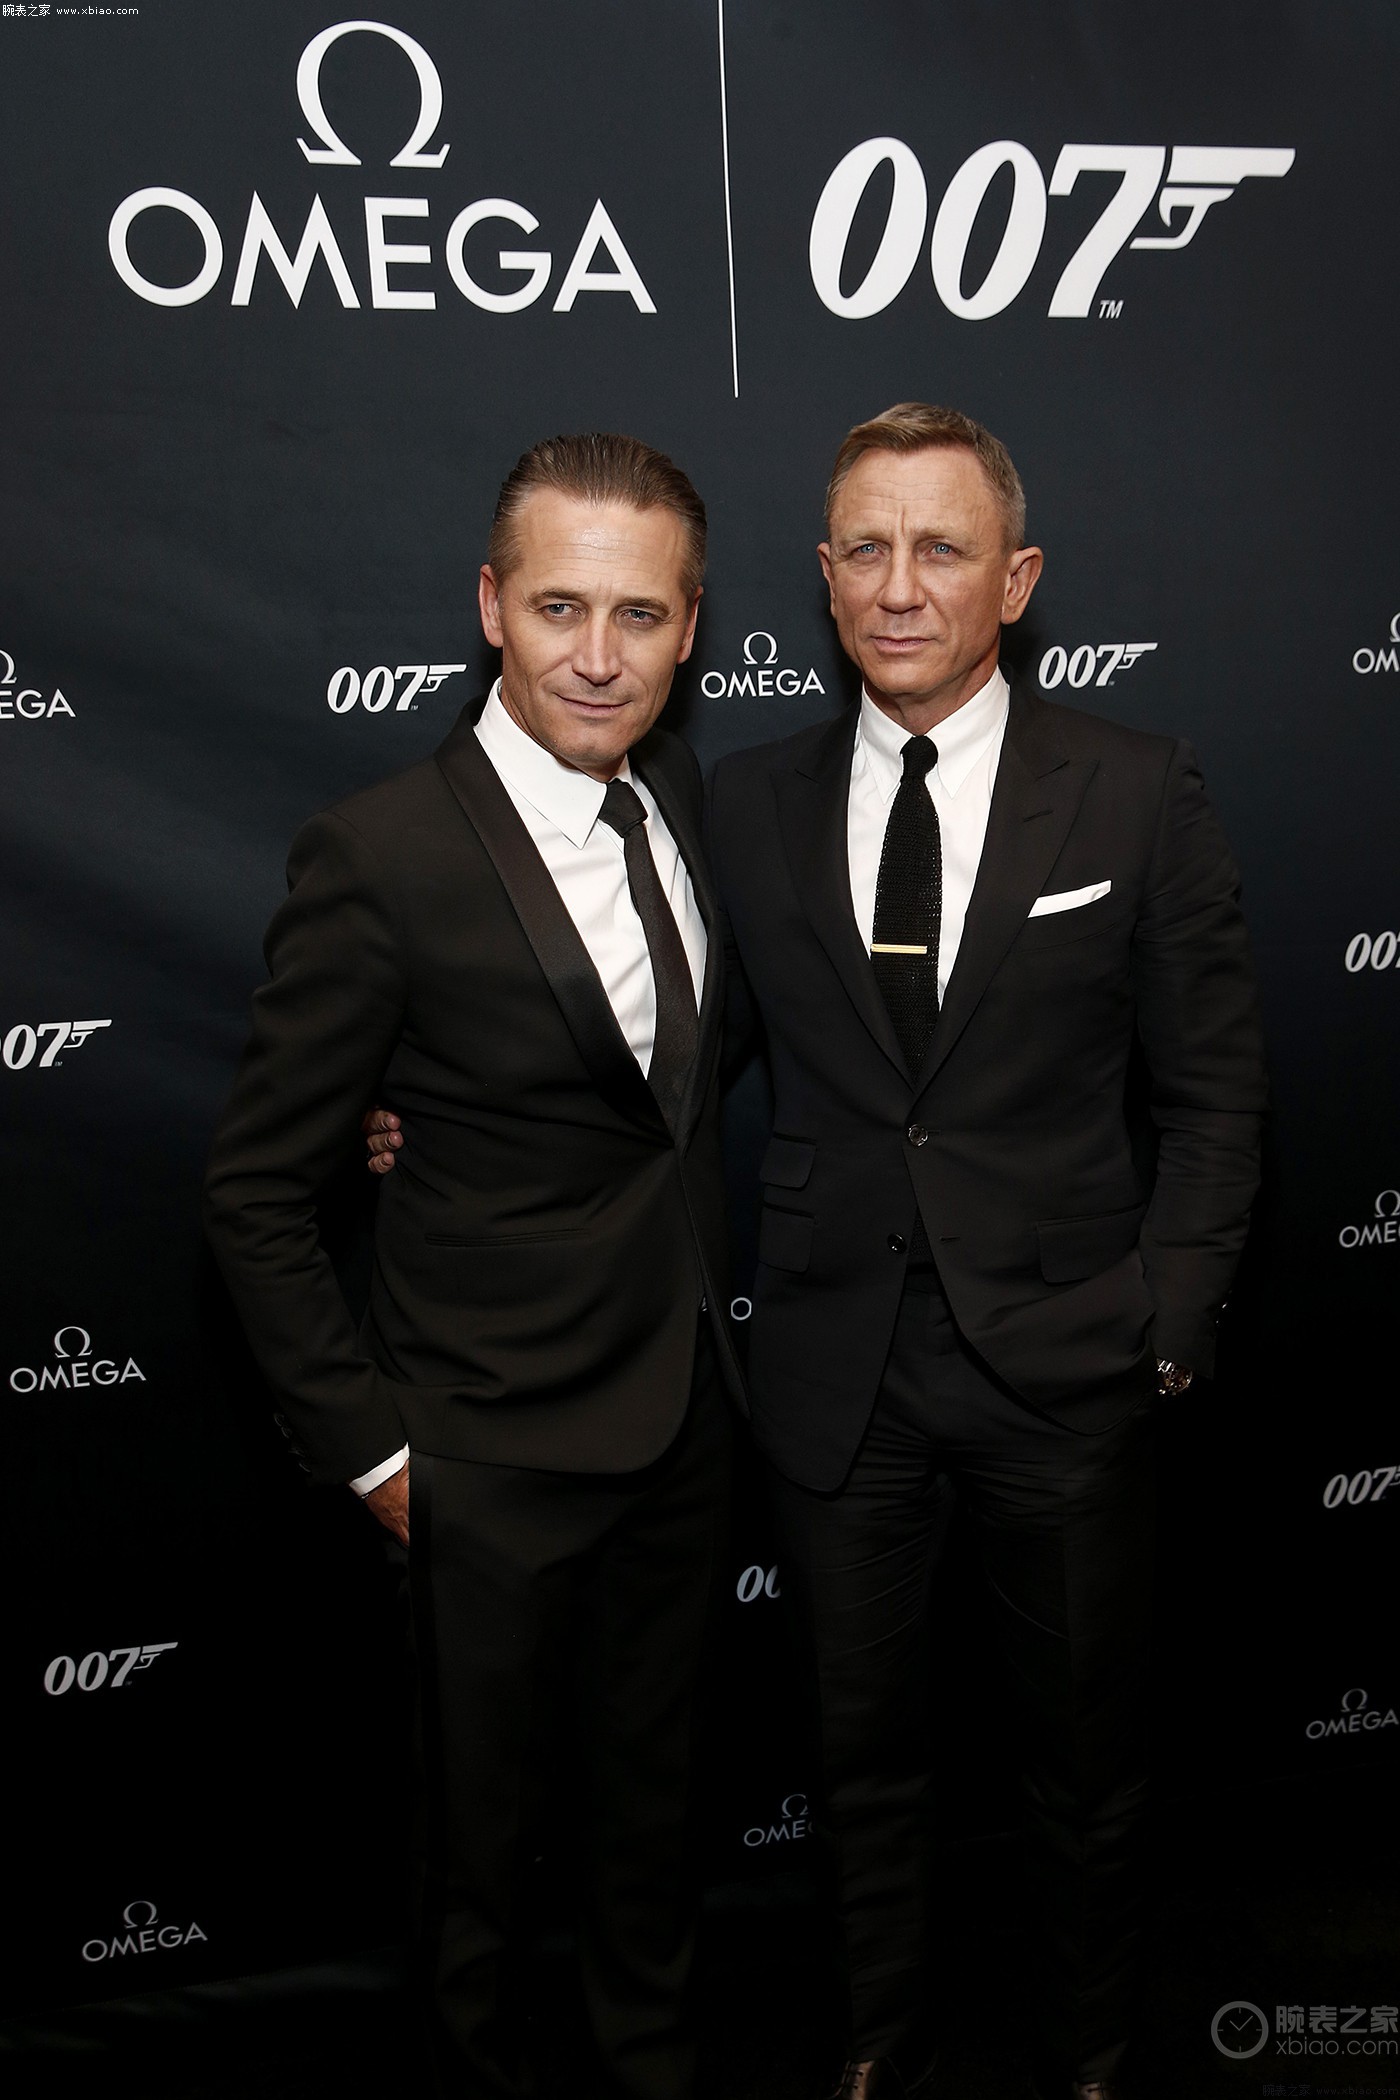 好莱坞硬汉猛男007明星-丹尼尔克雷格壁纸下载-欧莱凯设计网